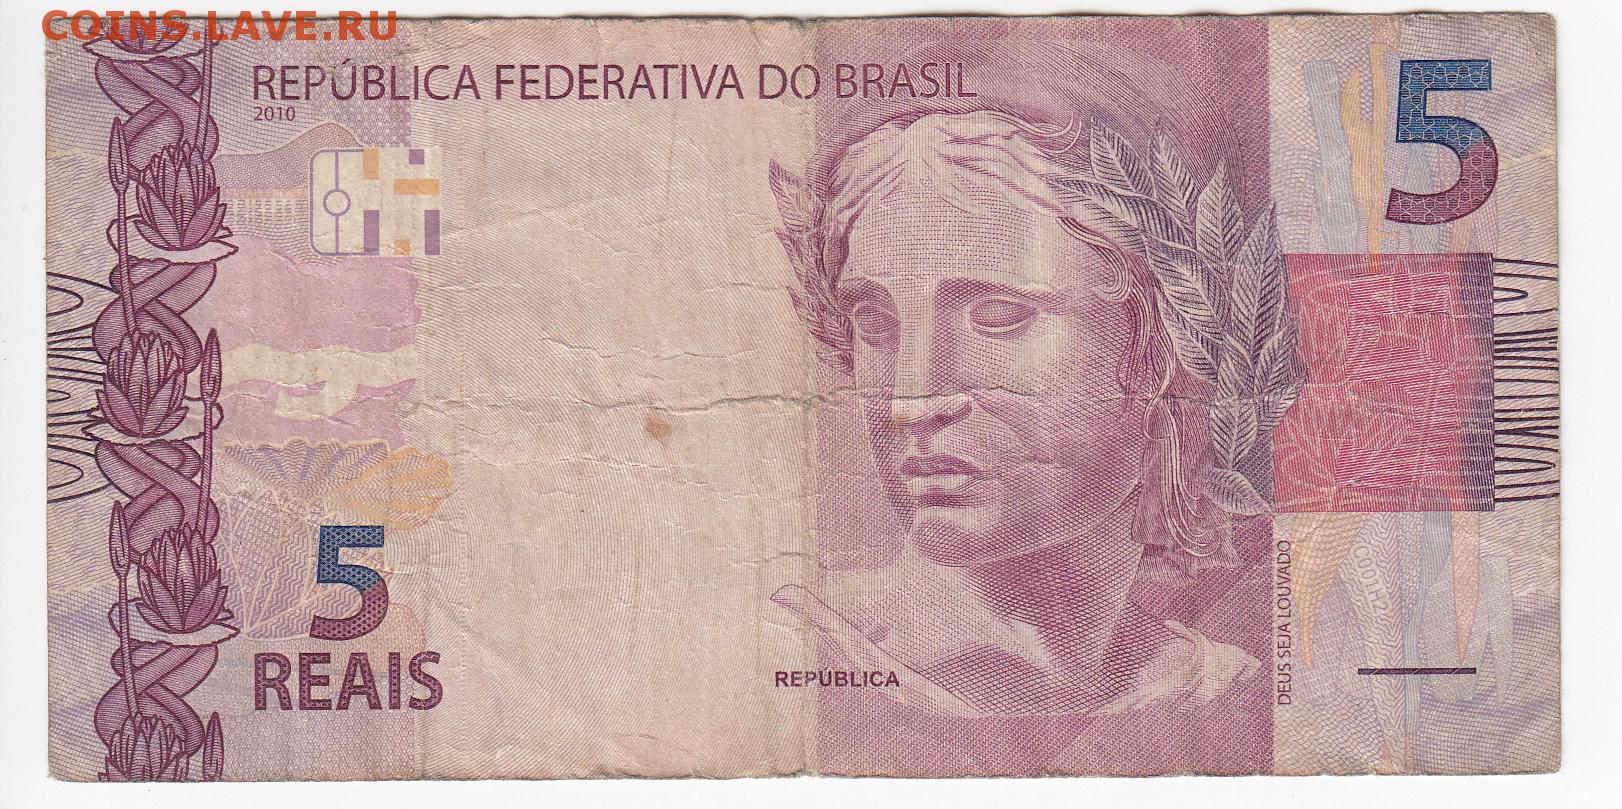 8 48 в рублях. 5 Реал Бразилия. 5 Бразильских реалов. Банкнота 5 реалов Бразилия. 5 Реал банкнота.